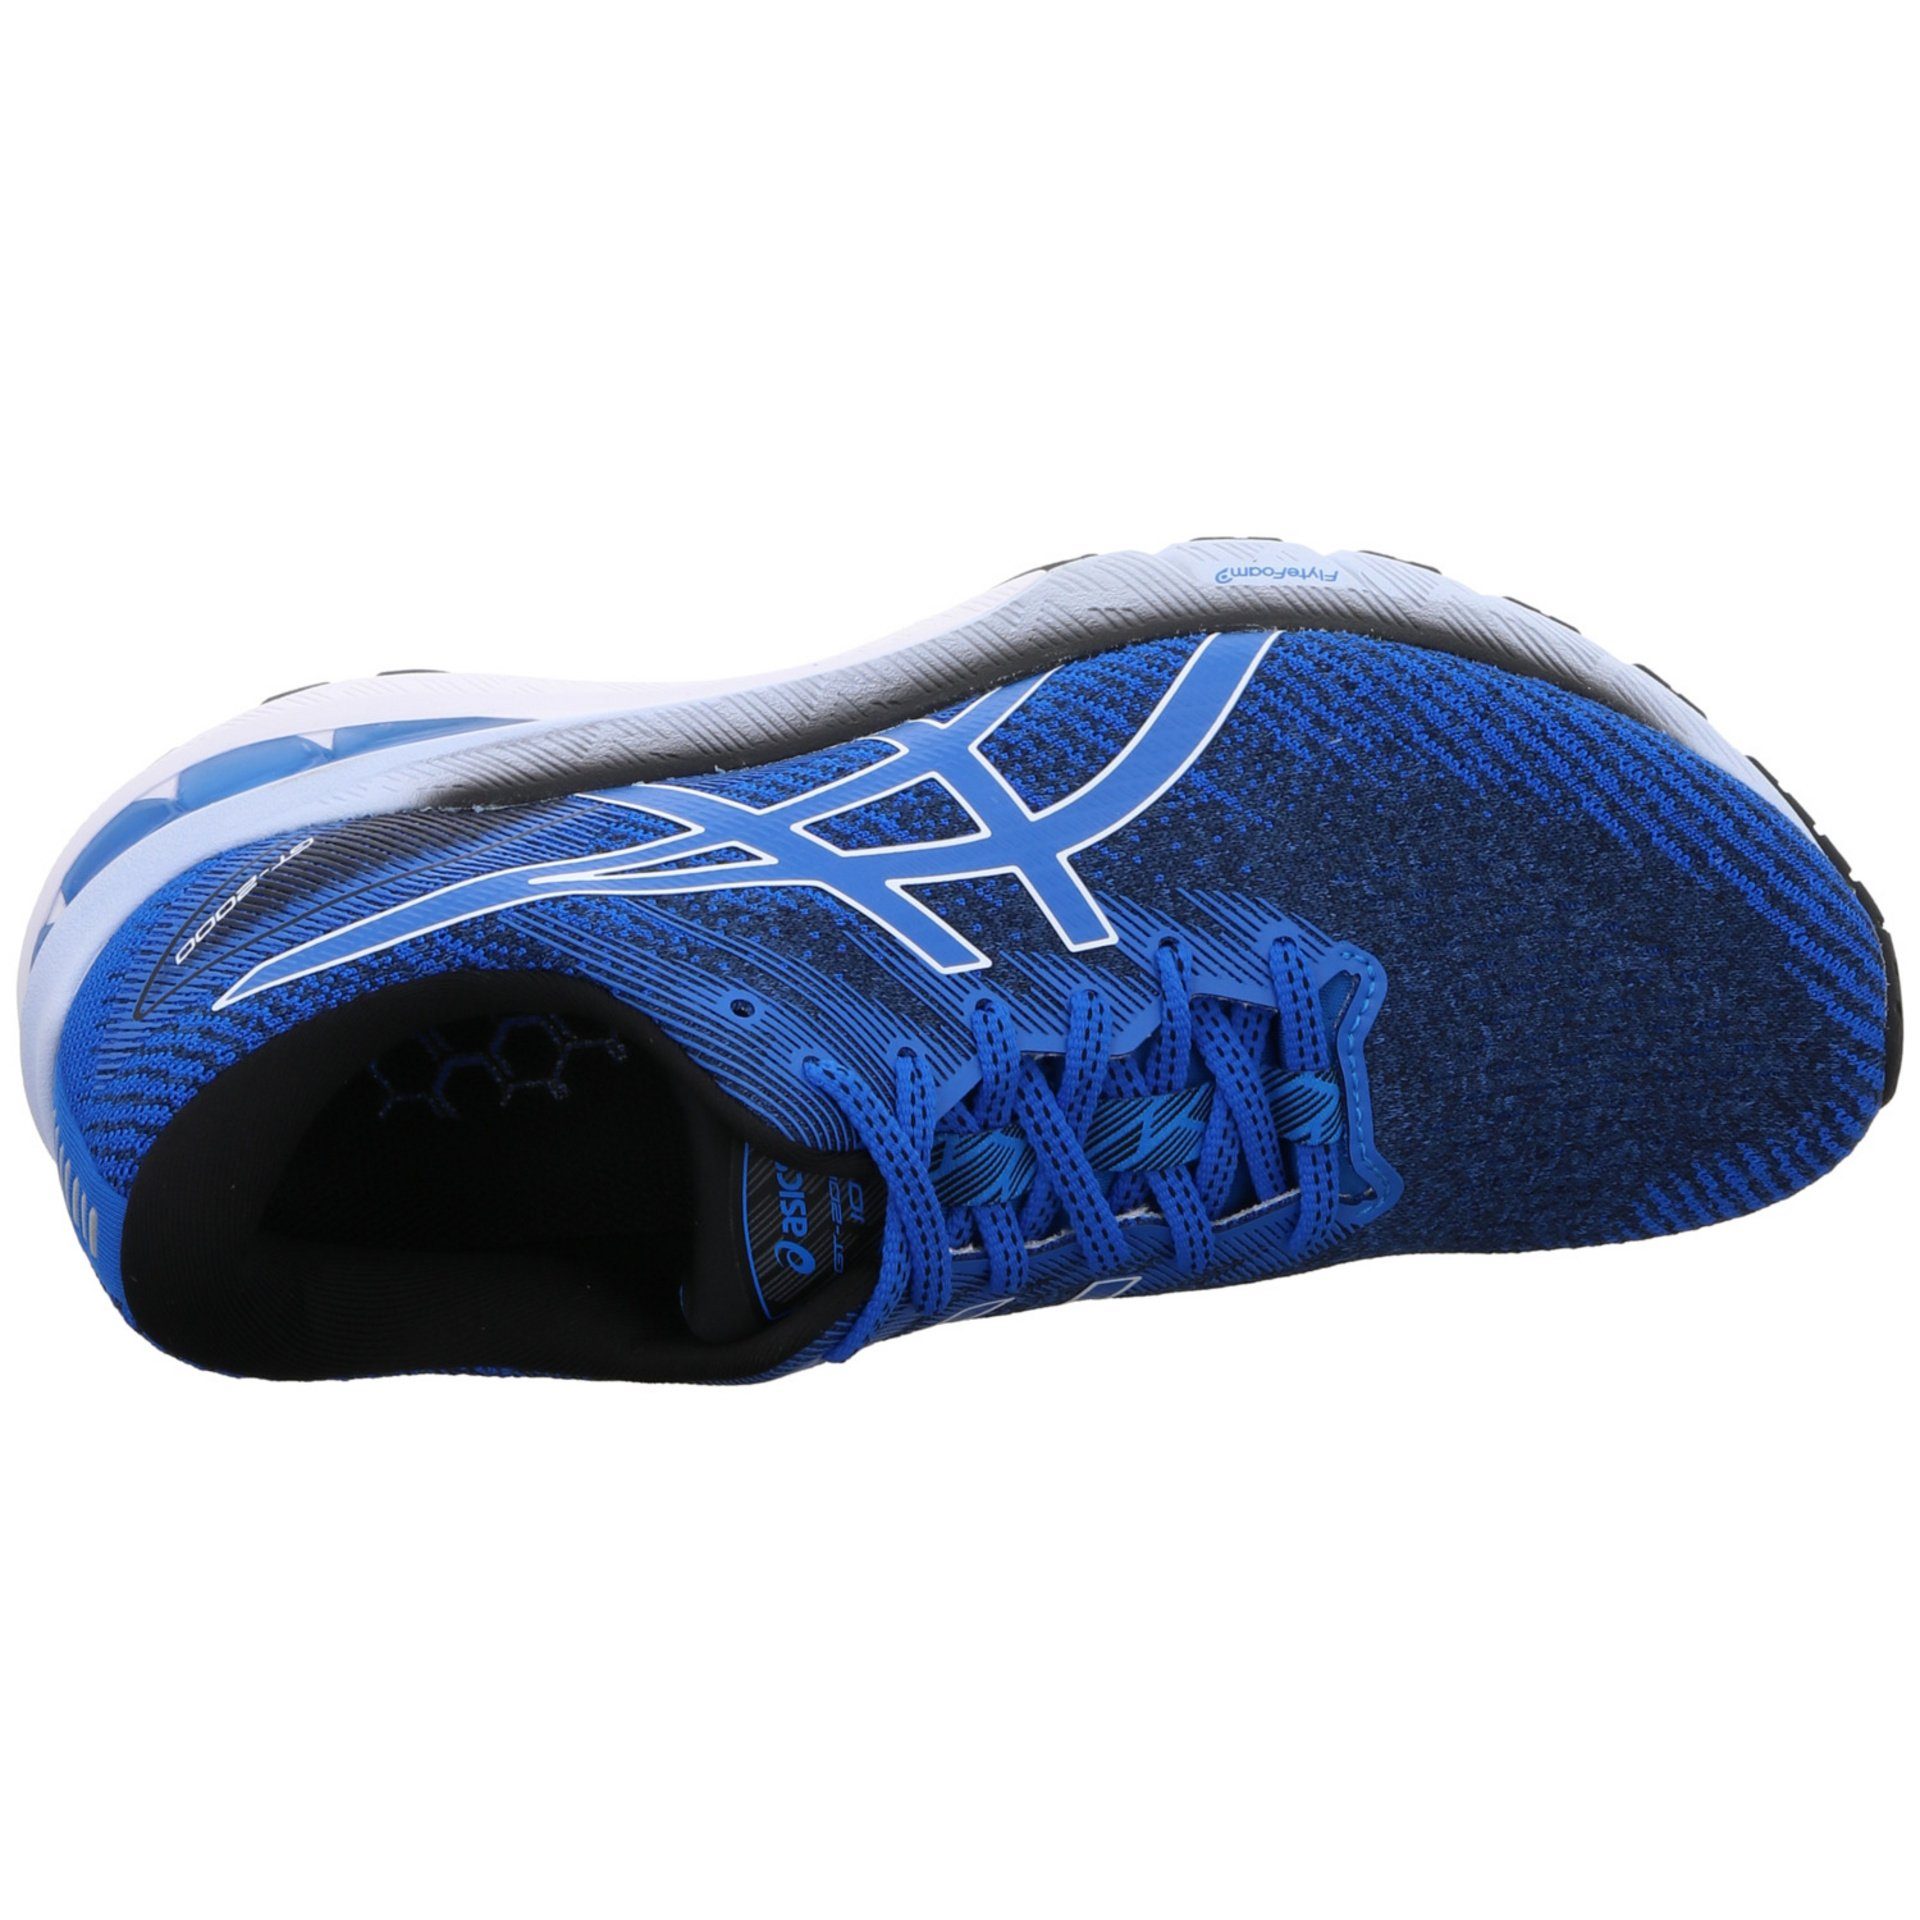 kombi-weiss Laufschuh Laufschuhe Asics Textil GT-2000 blau Damen Laufschuh